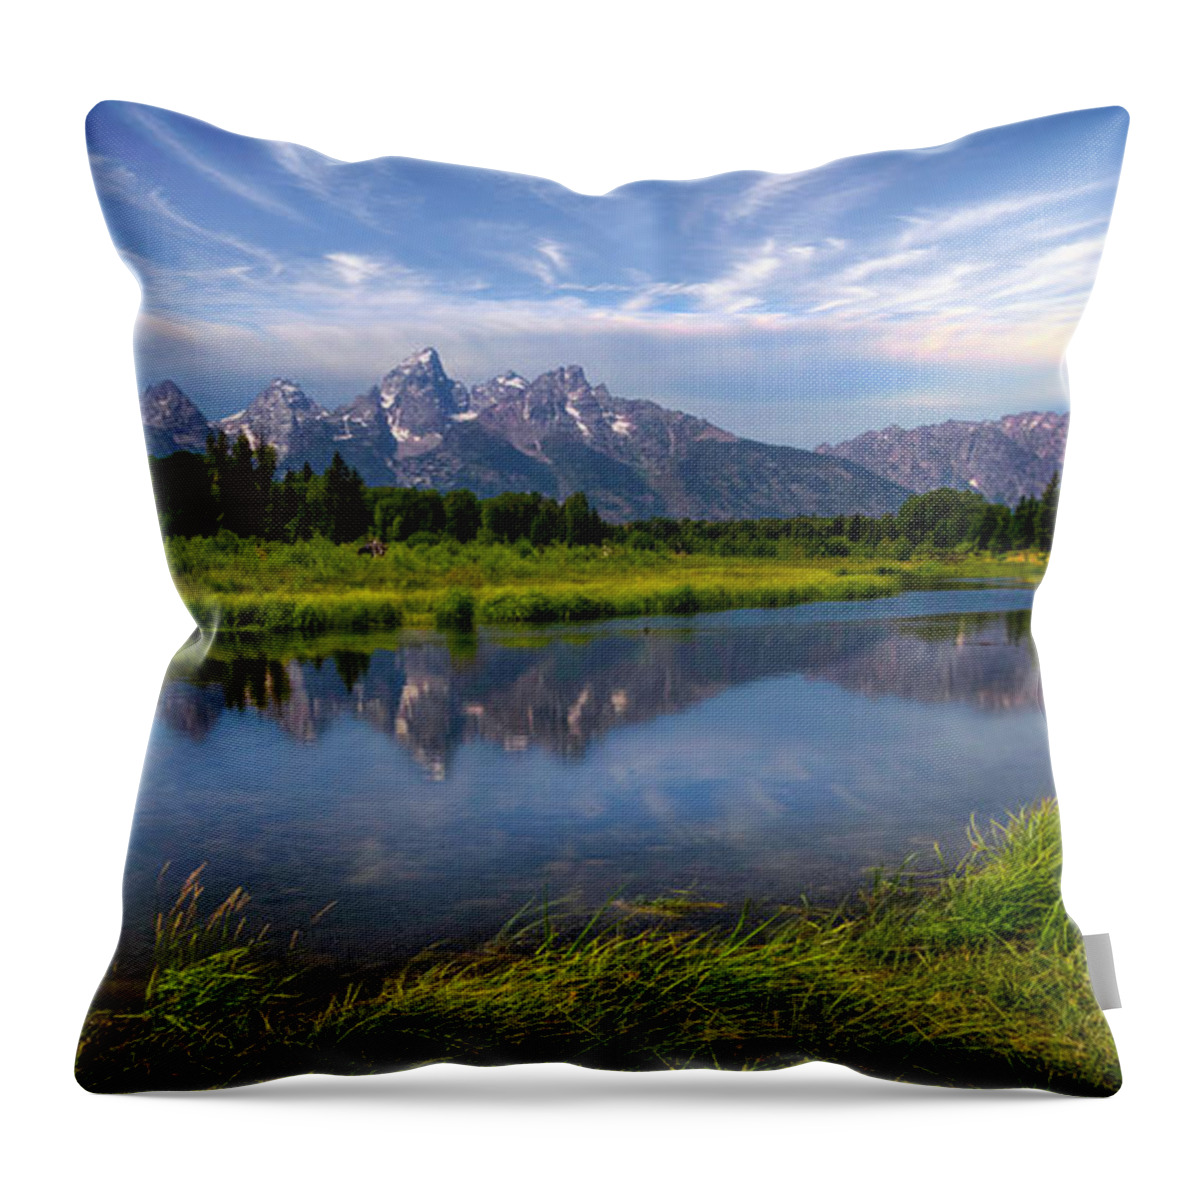 Mount Moran Throw Pillow featuring the photograph Teton Solitude Panorama by Karen Jorstad